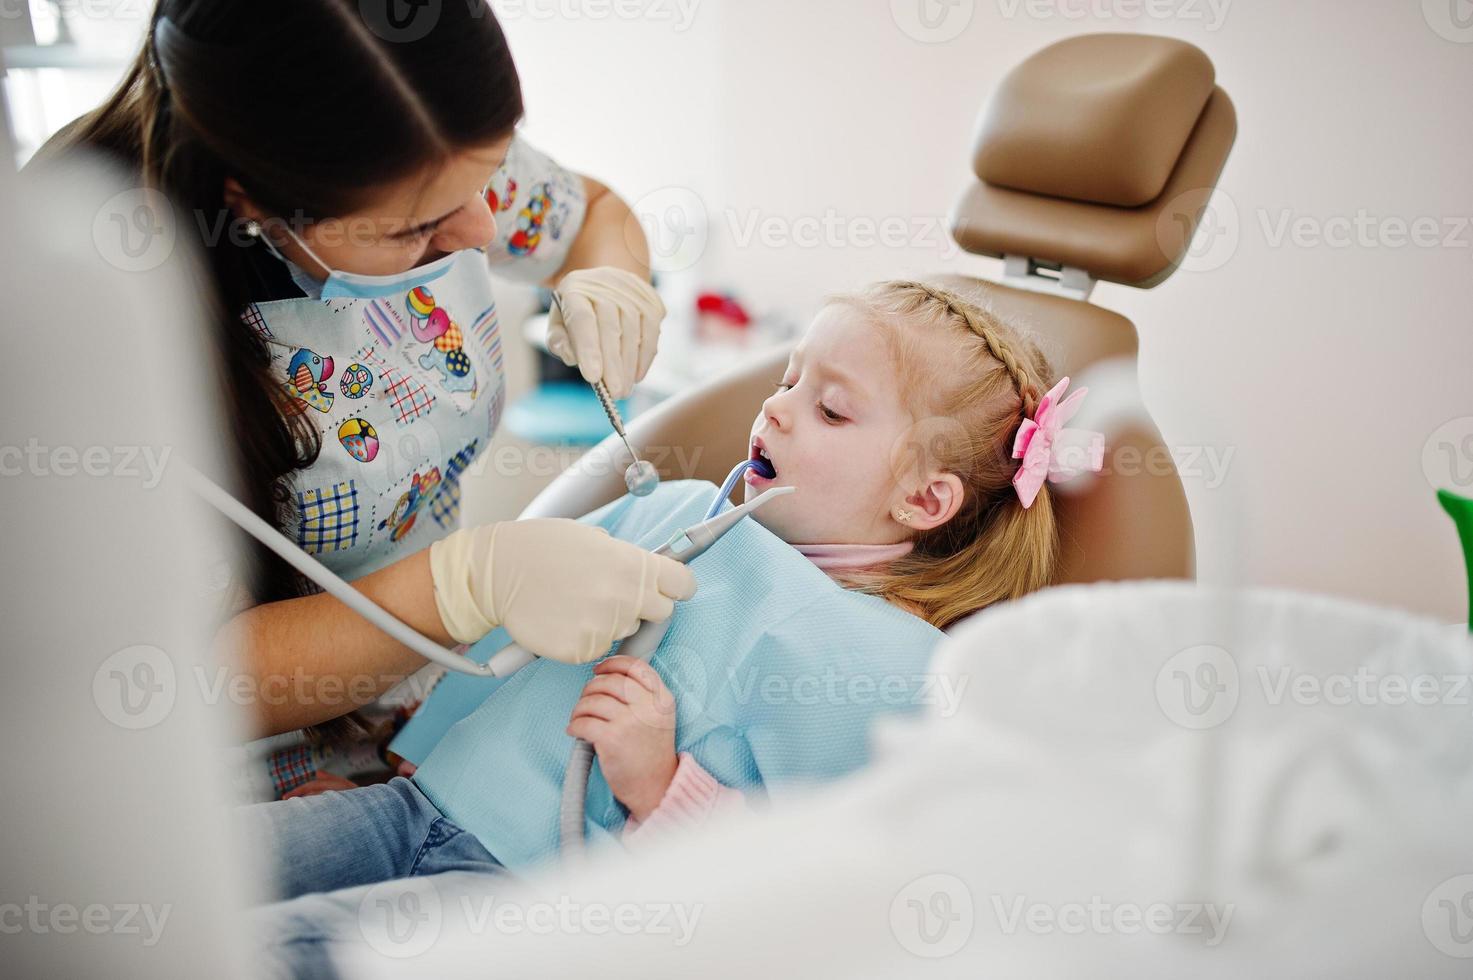 petite fille au fauteuil de dentiste. enfants dentaires. photo